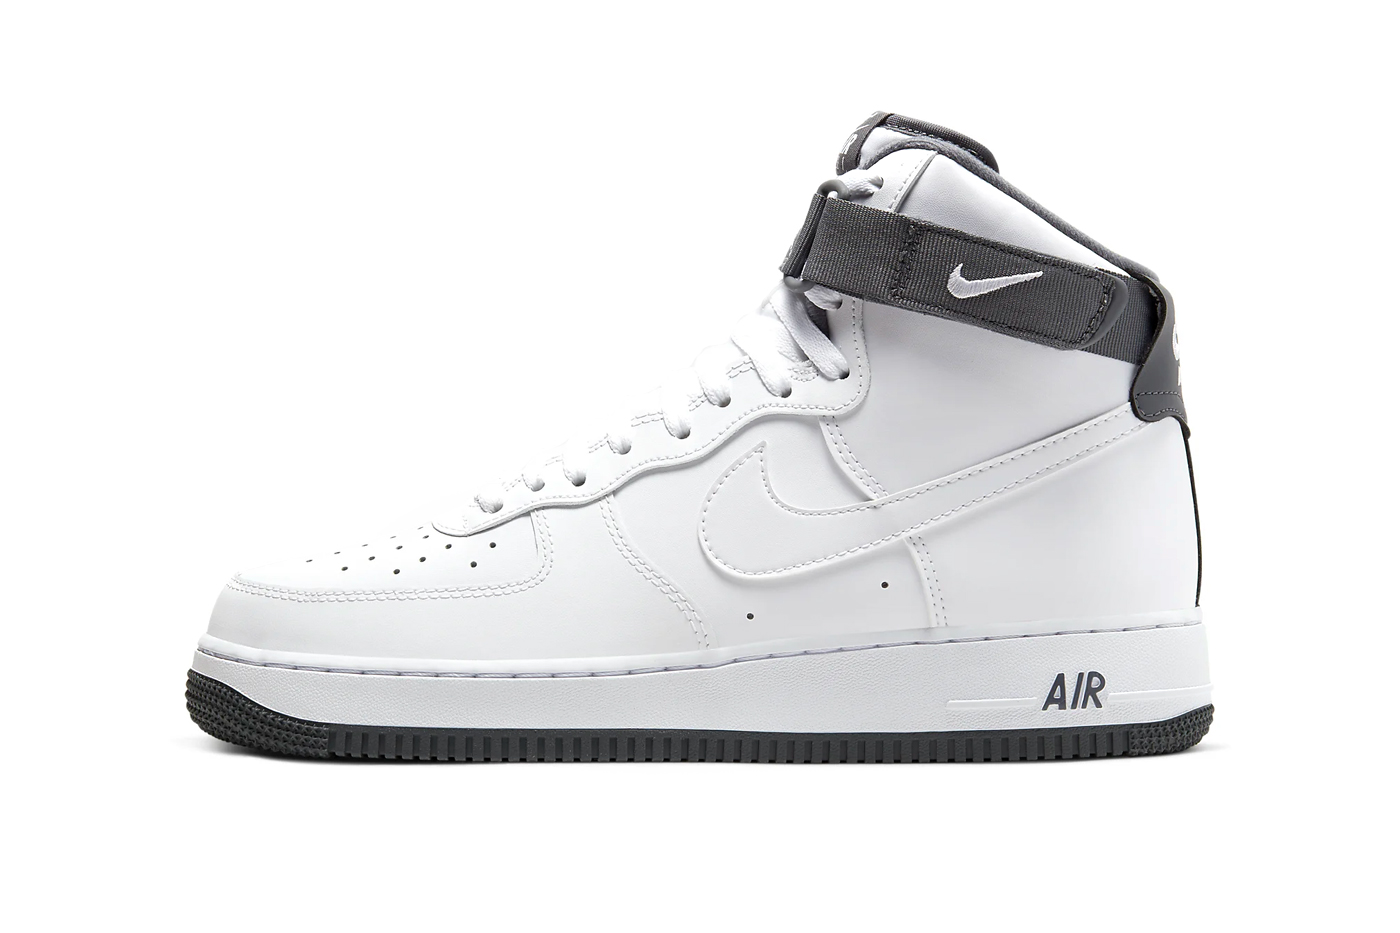 Nike Air Force 1 High '07 White/Dark Gray 2020, Drops